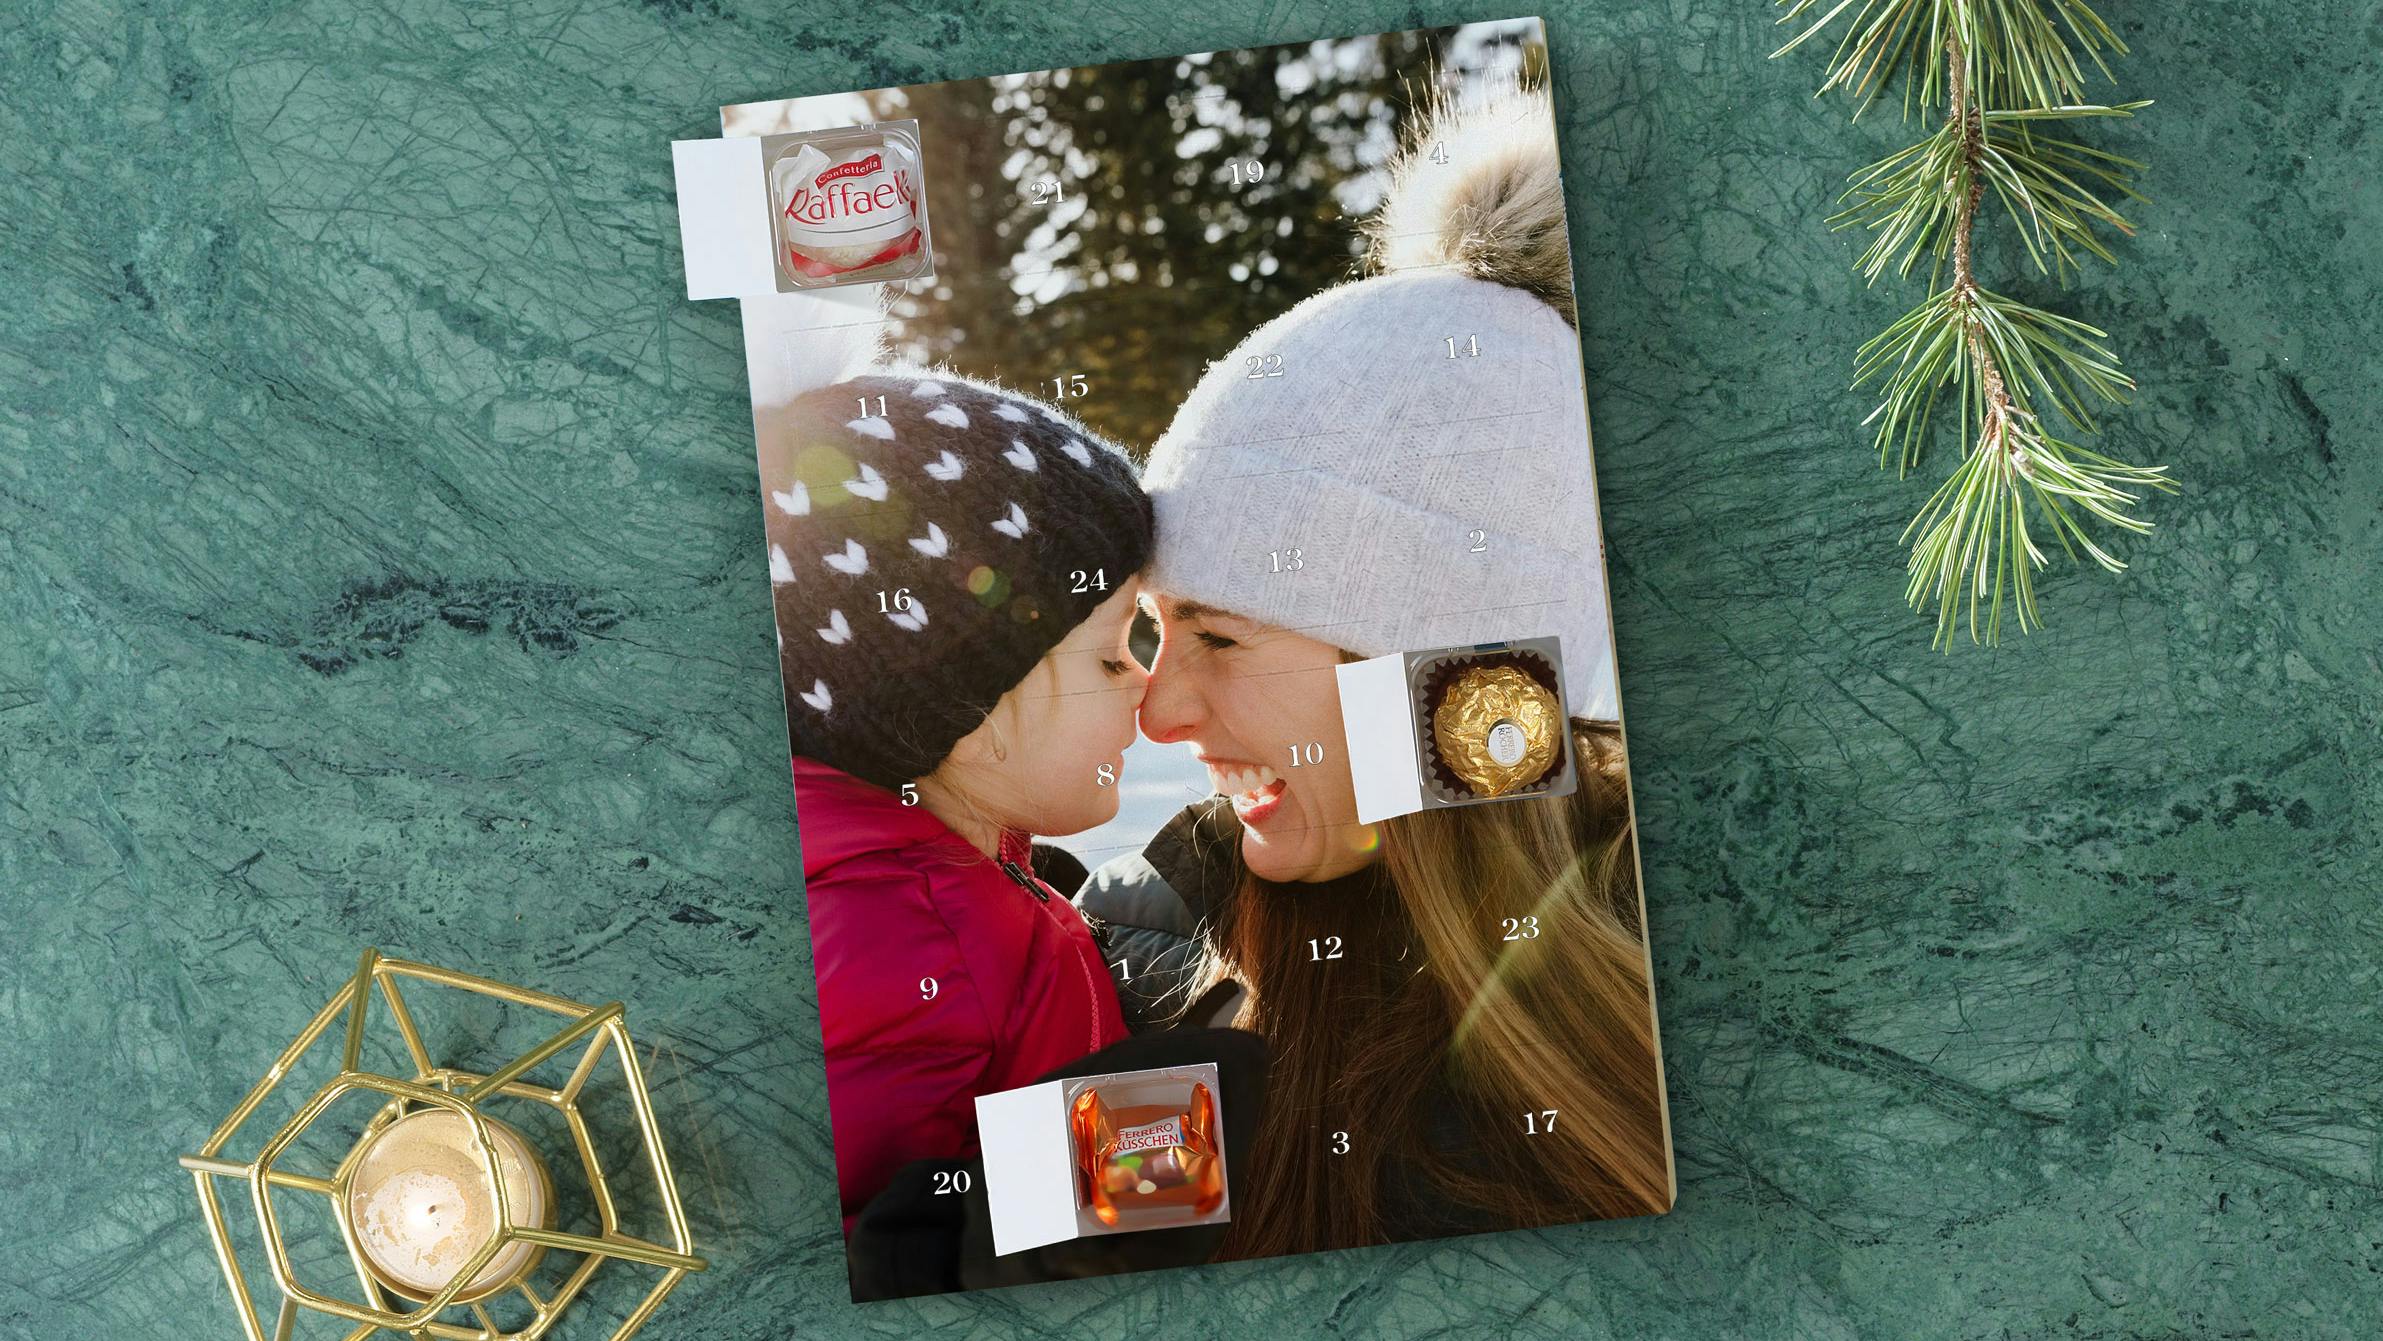 Calendario dell'Avvento personalizzato con cioccolatini Ferrero e foto di una mamma con sua figlia 